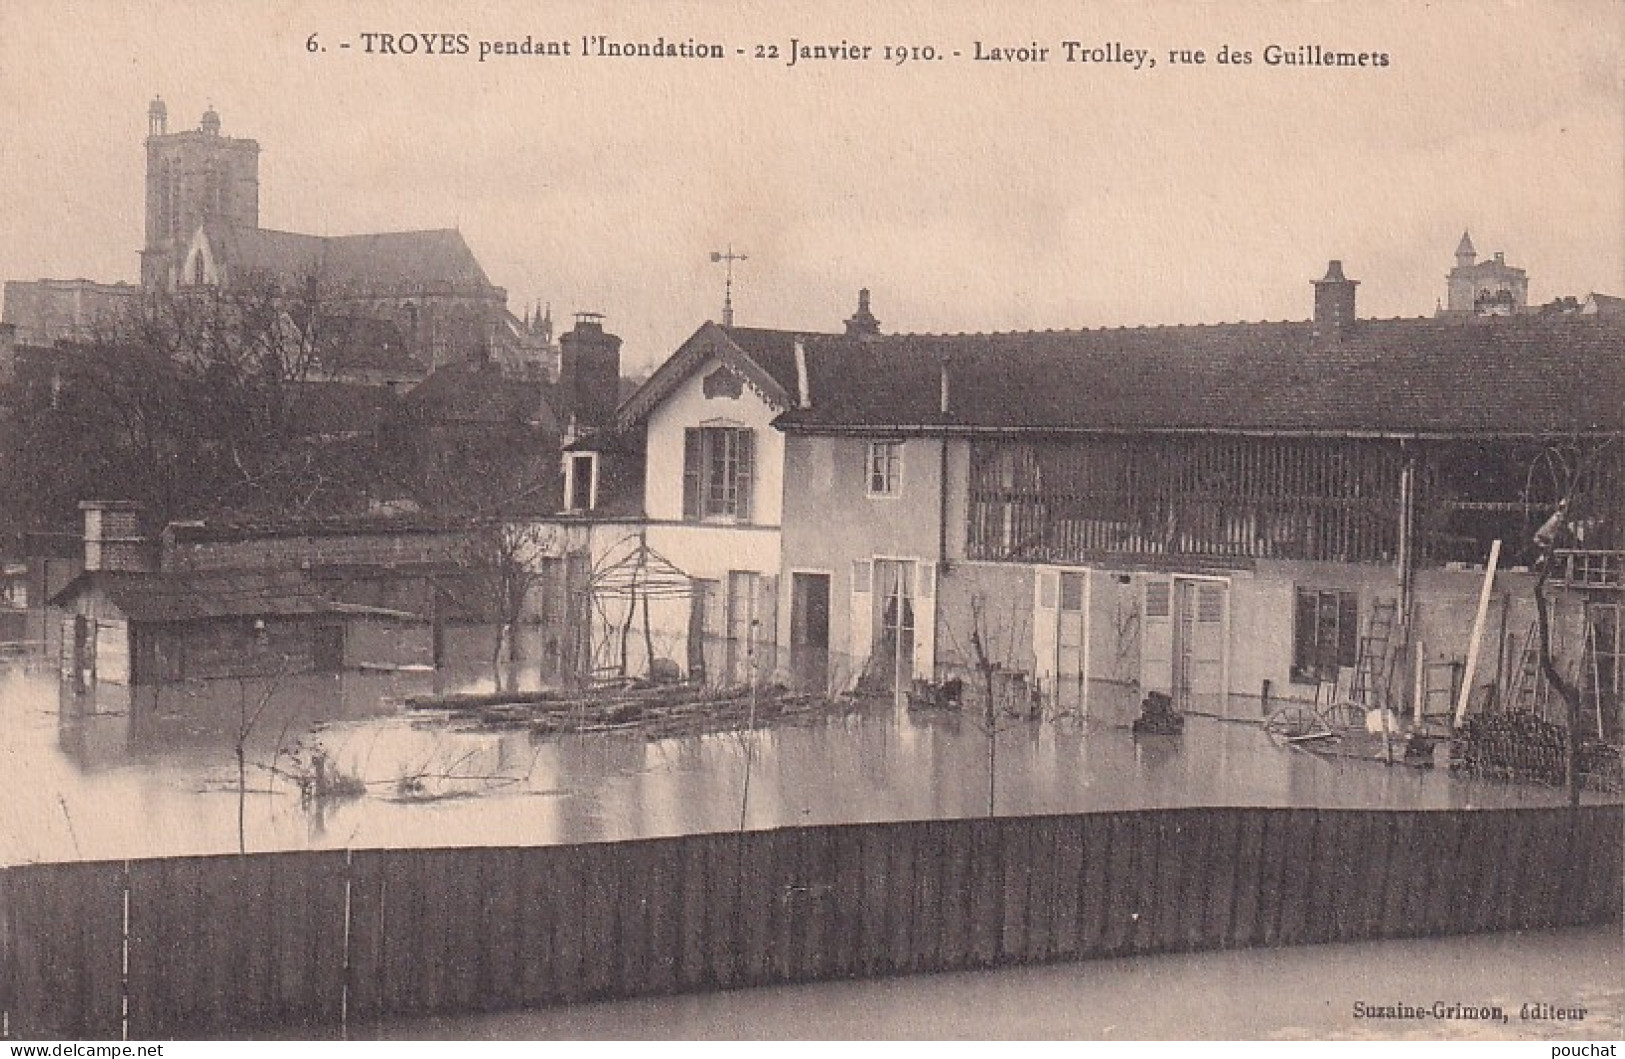 KO 32-(10) TROYES PENDANT L'INONDATION 22 JANVIER 1910 - LAVOIR TROLLEY , RUE DES GUILLEMETS - Troyes